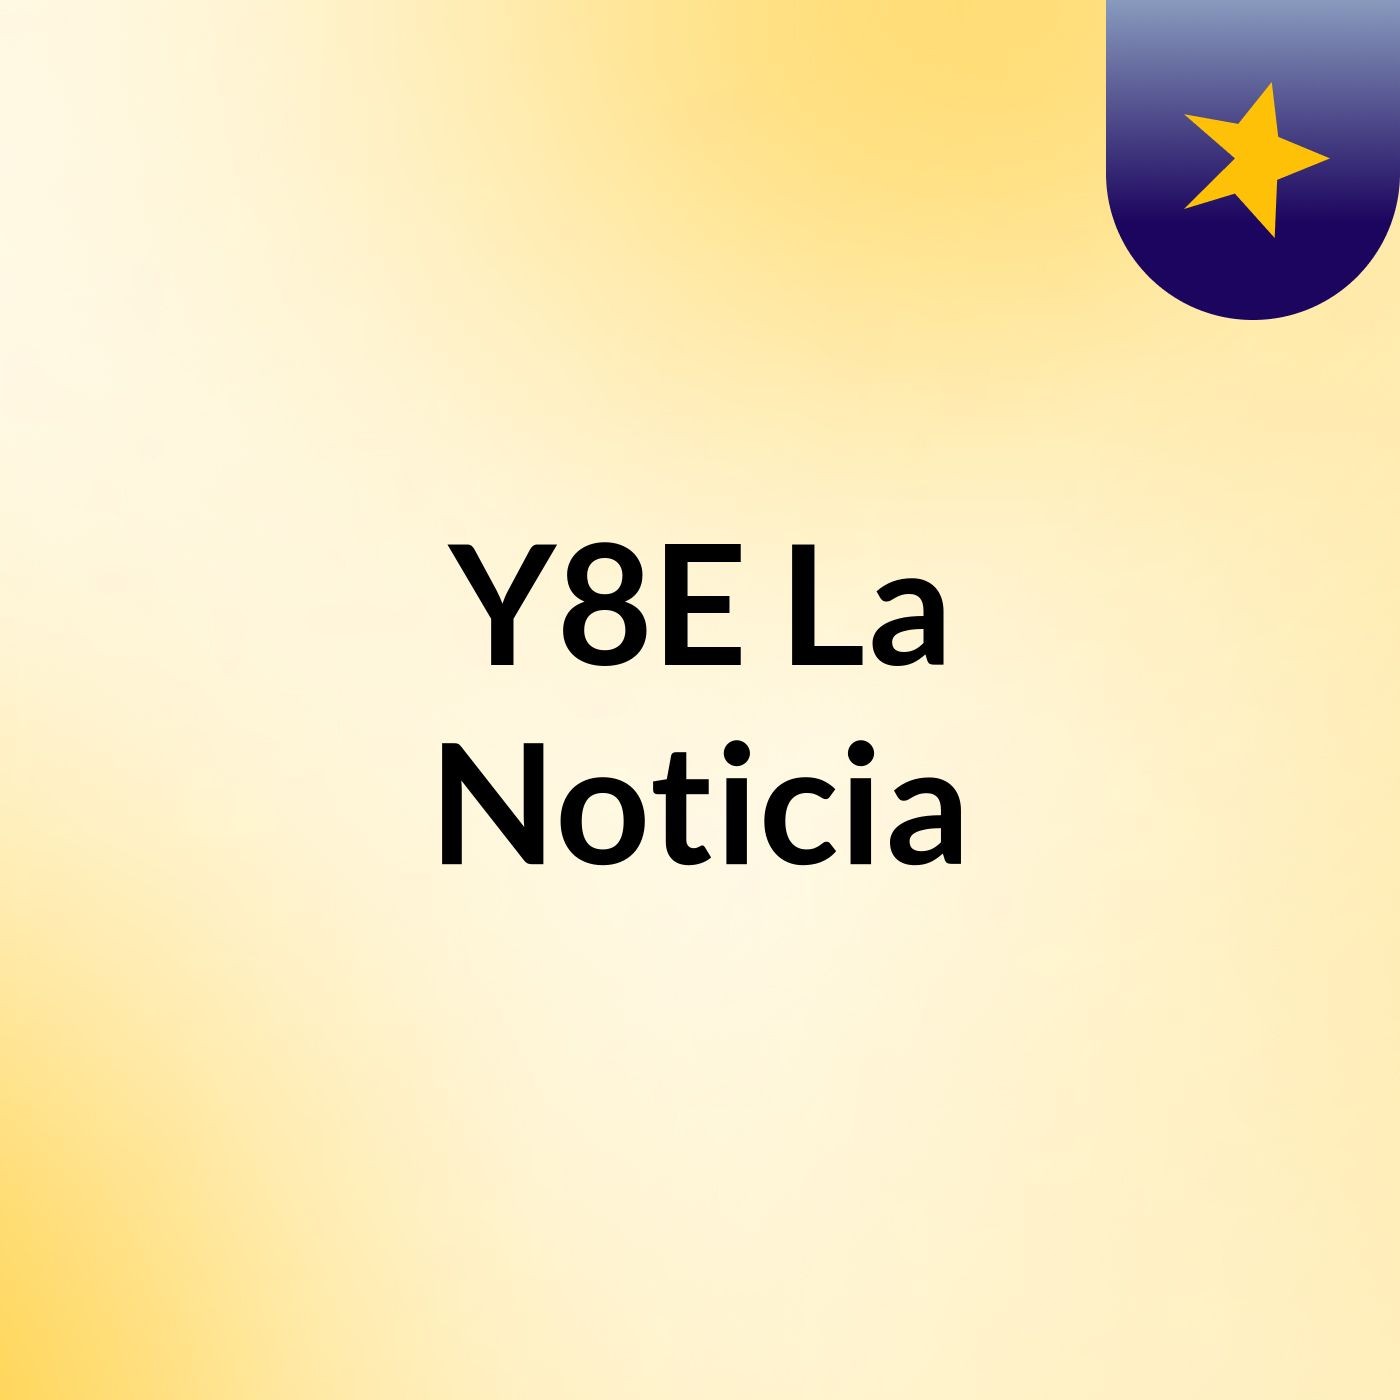 Y8E La Noticia